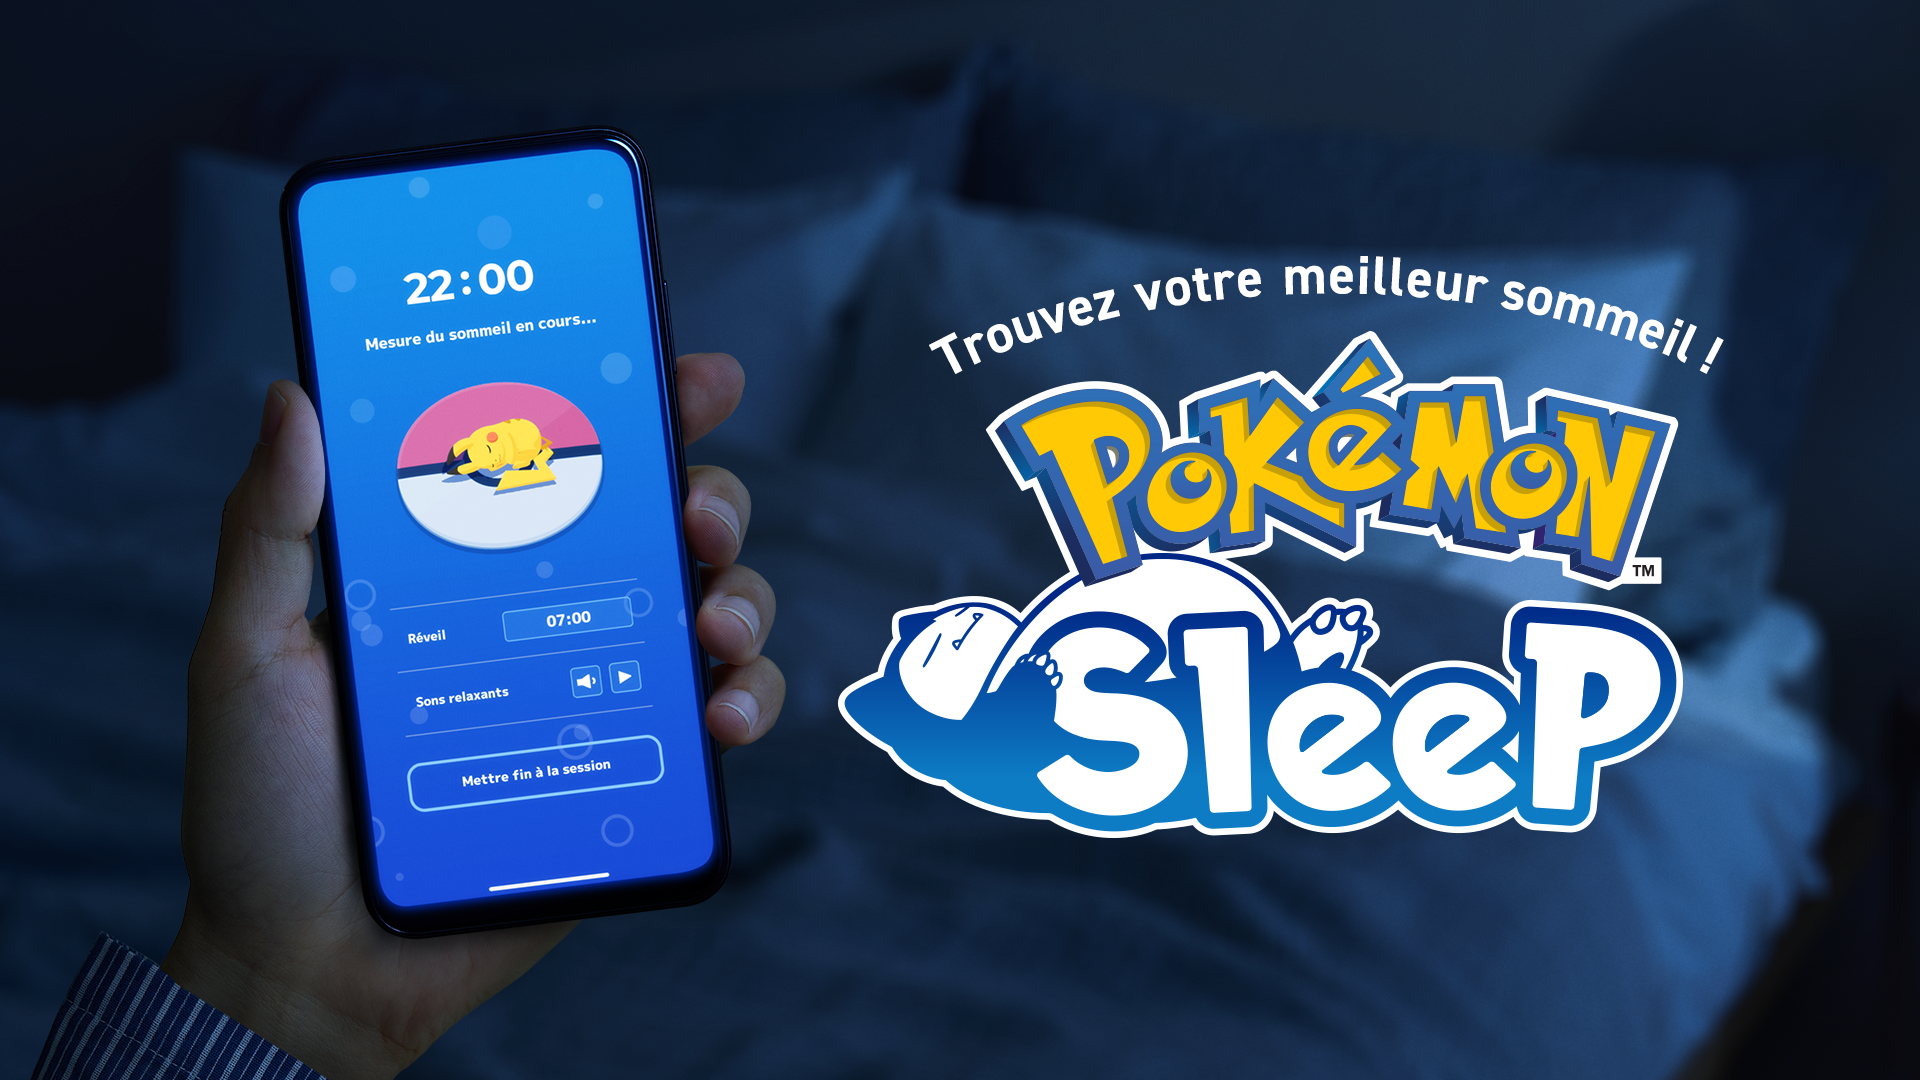 Pokémon – Site officiel de Pokémon Sleep